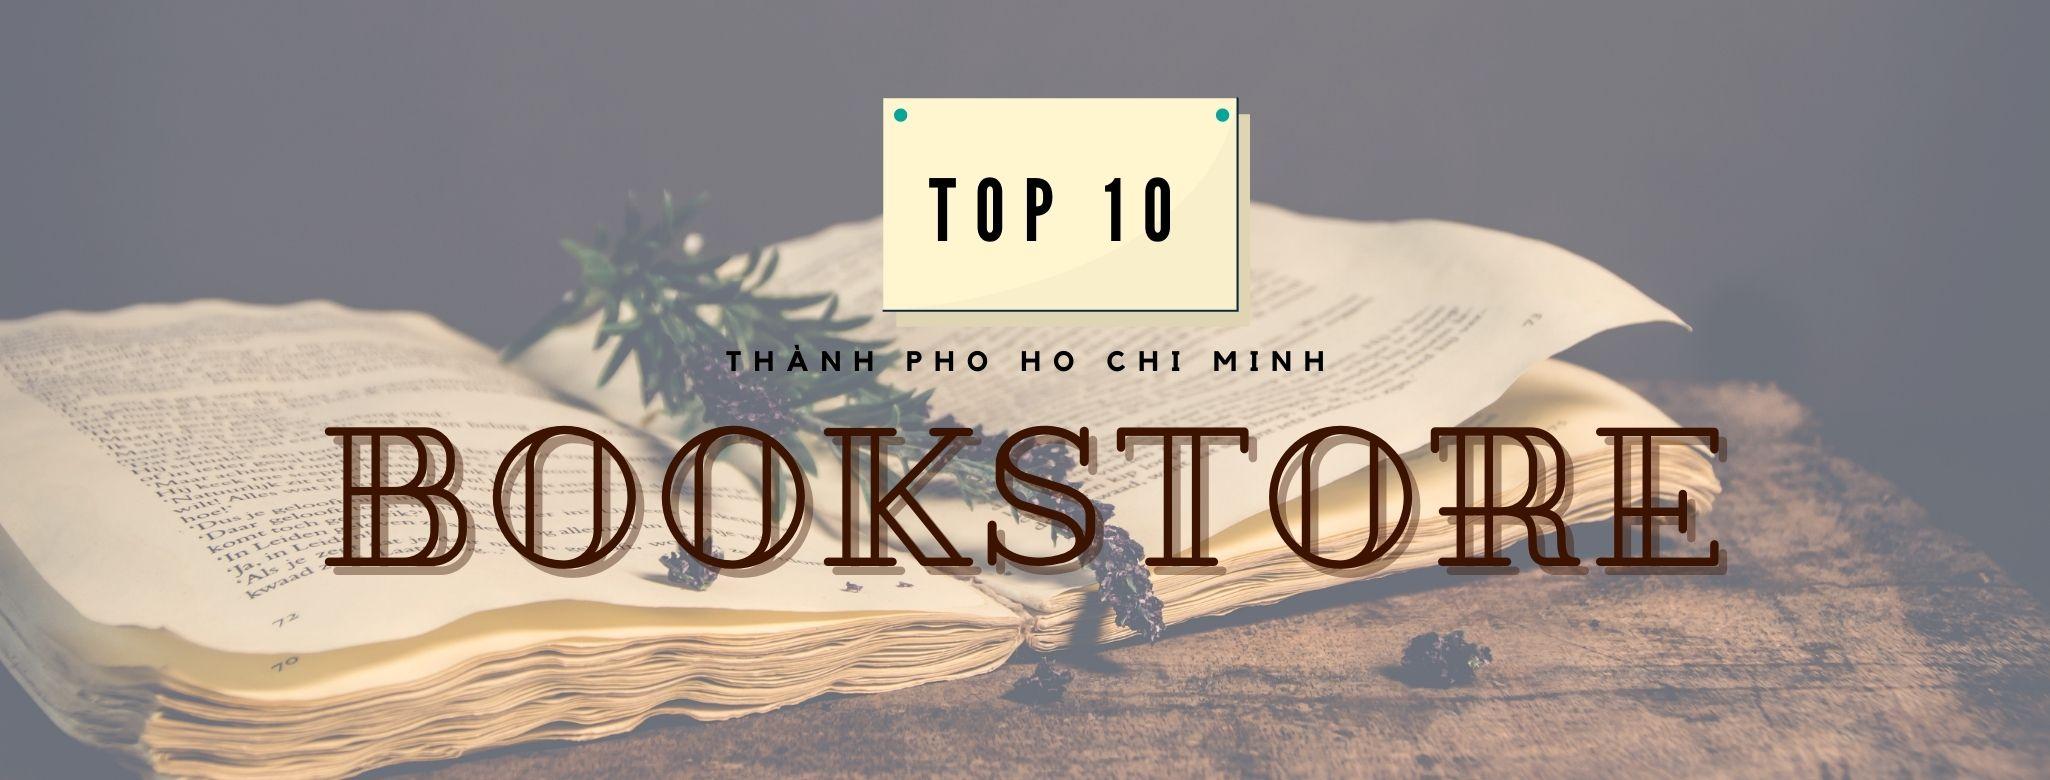 Top 10 nhà sách lớn và “xịn” nhất Thành phố Hồ Chí Minh